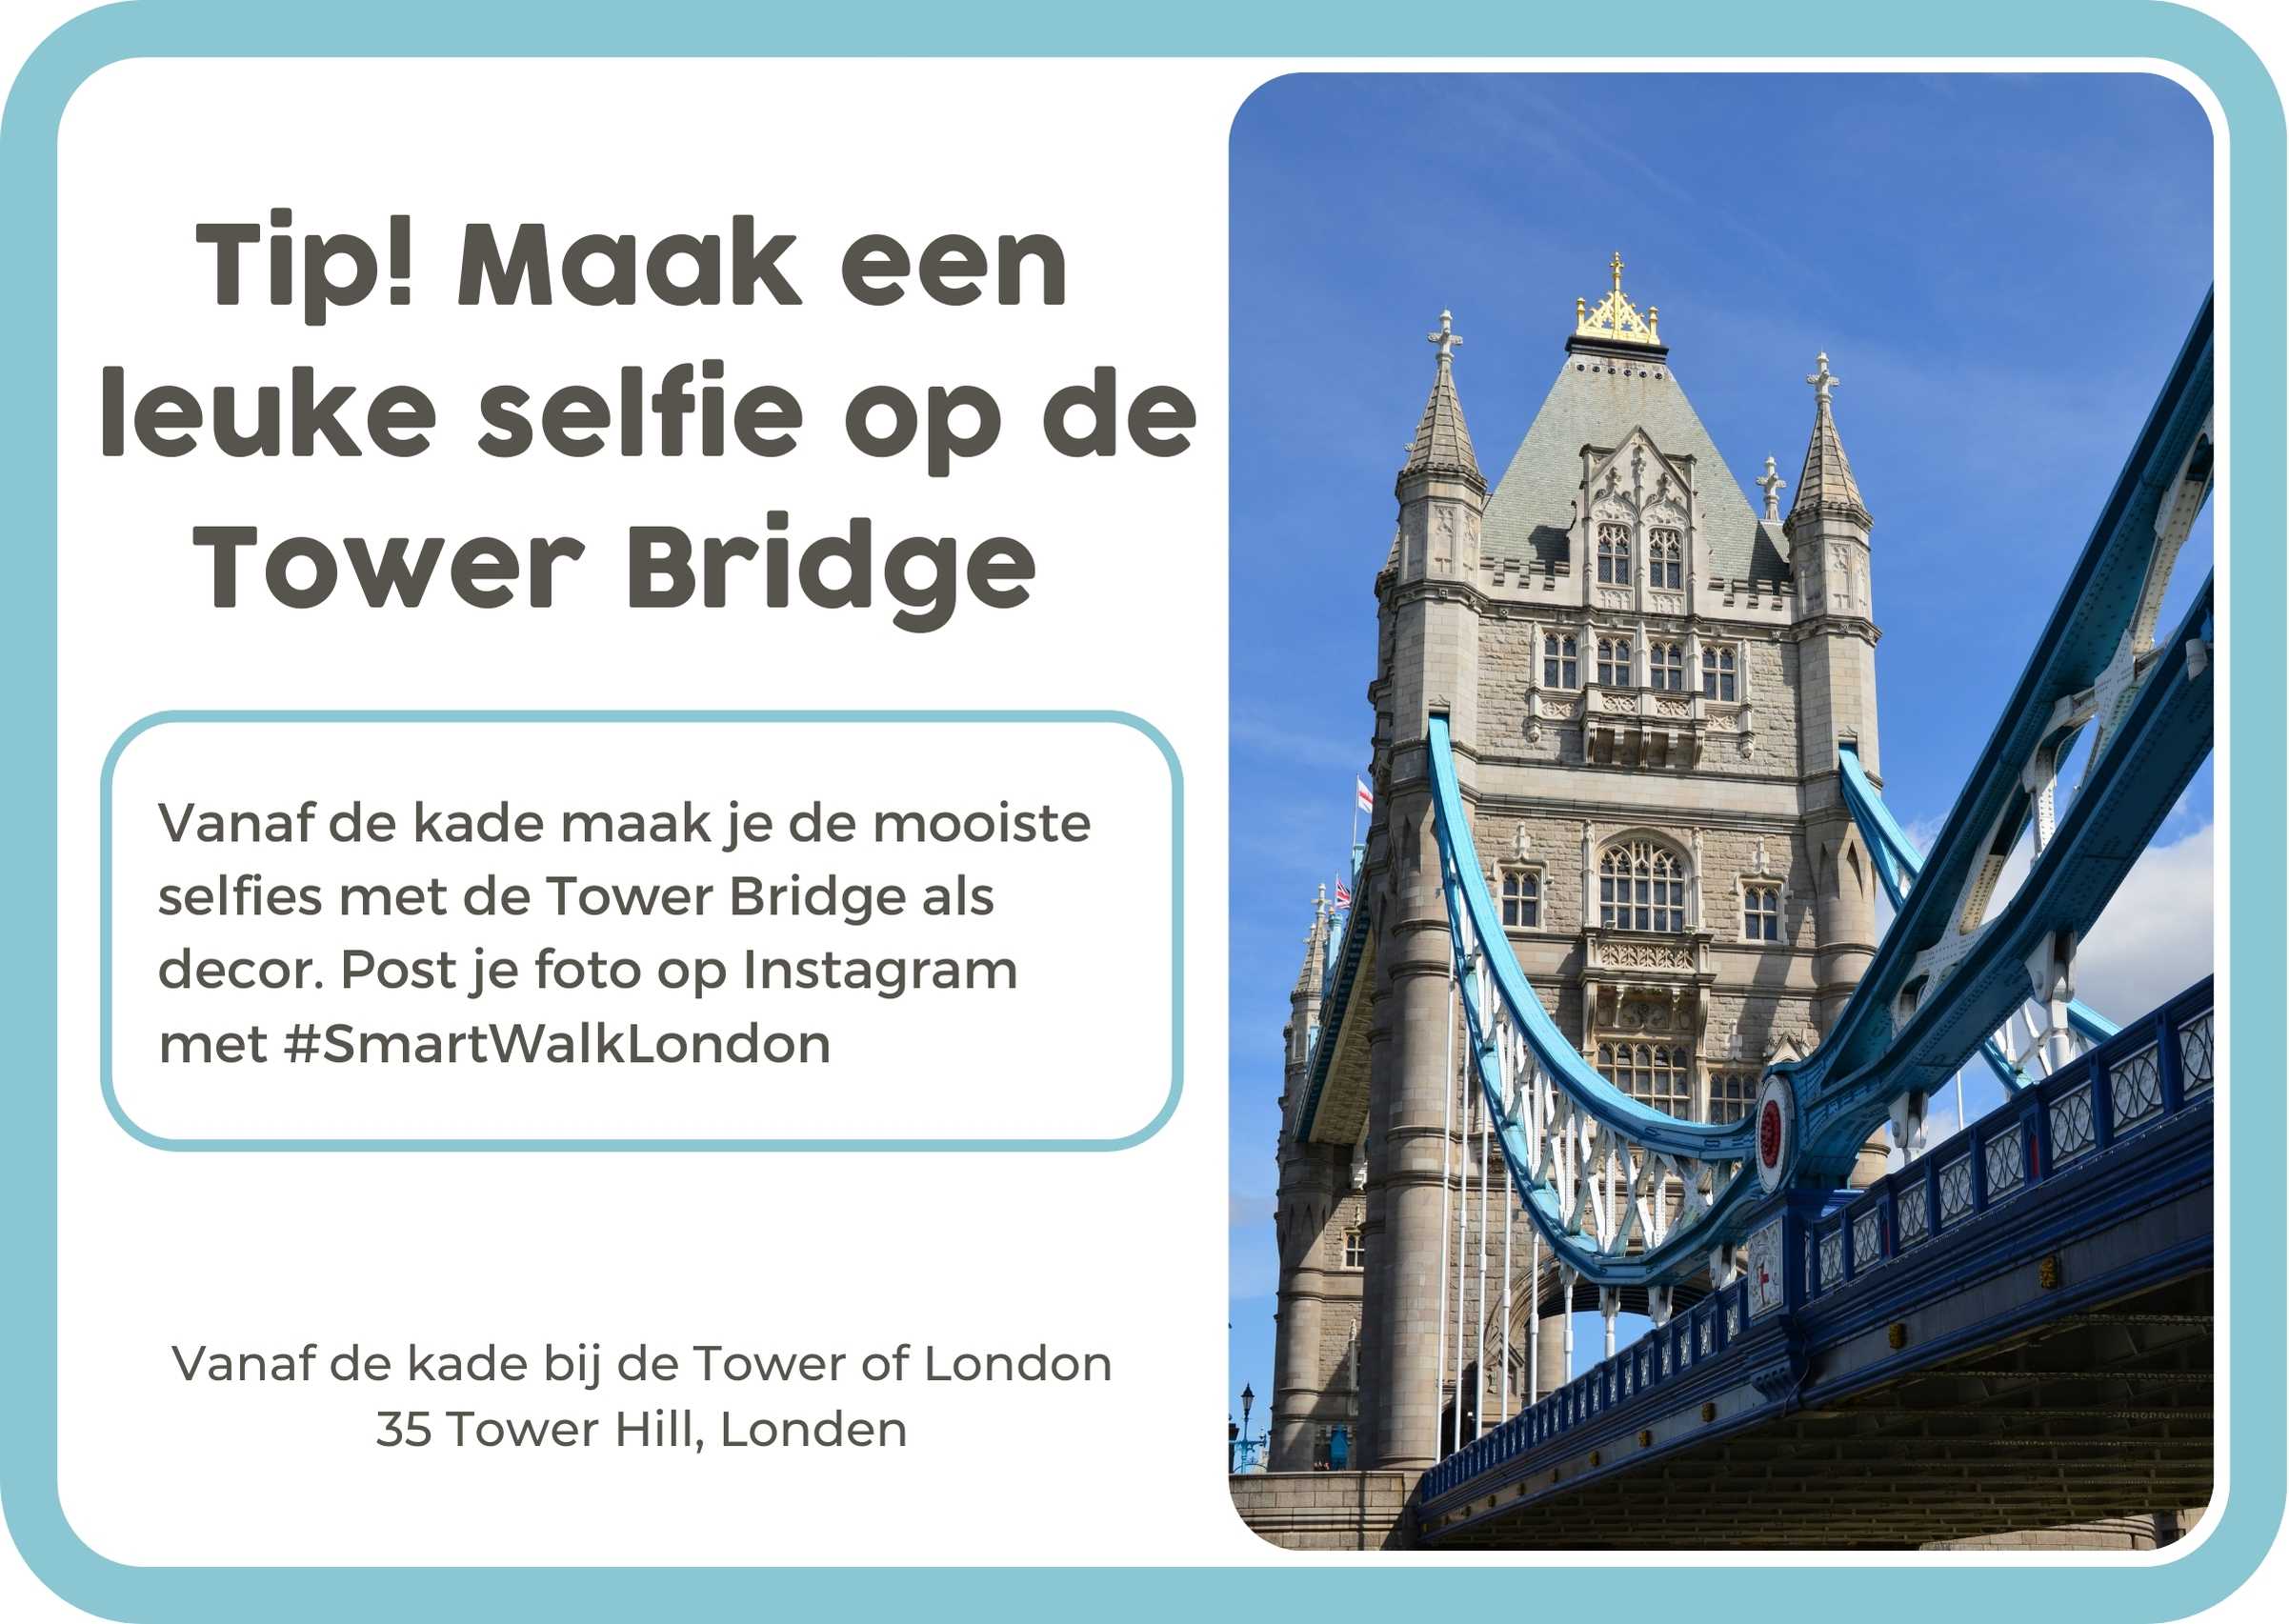 NL Tower Bridge Selfie